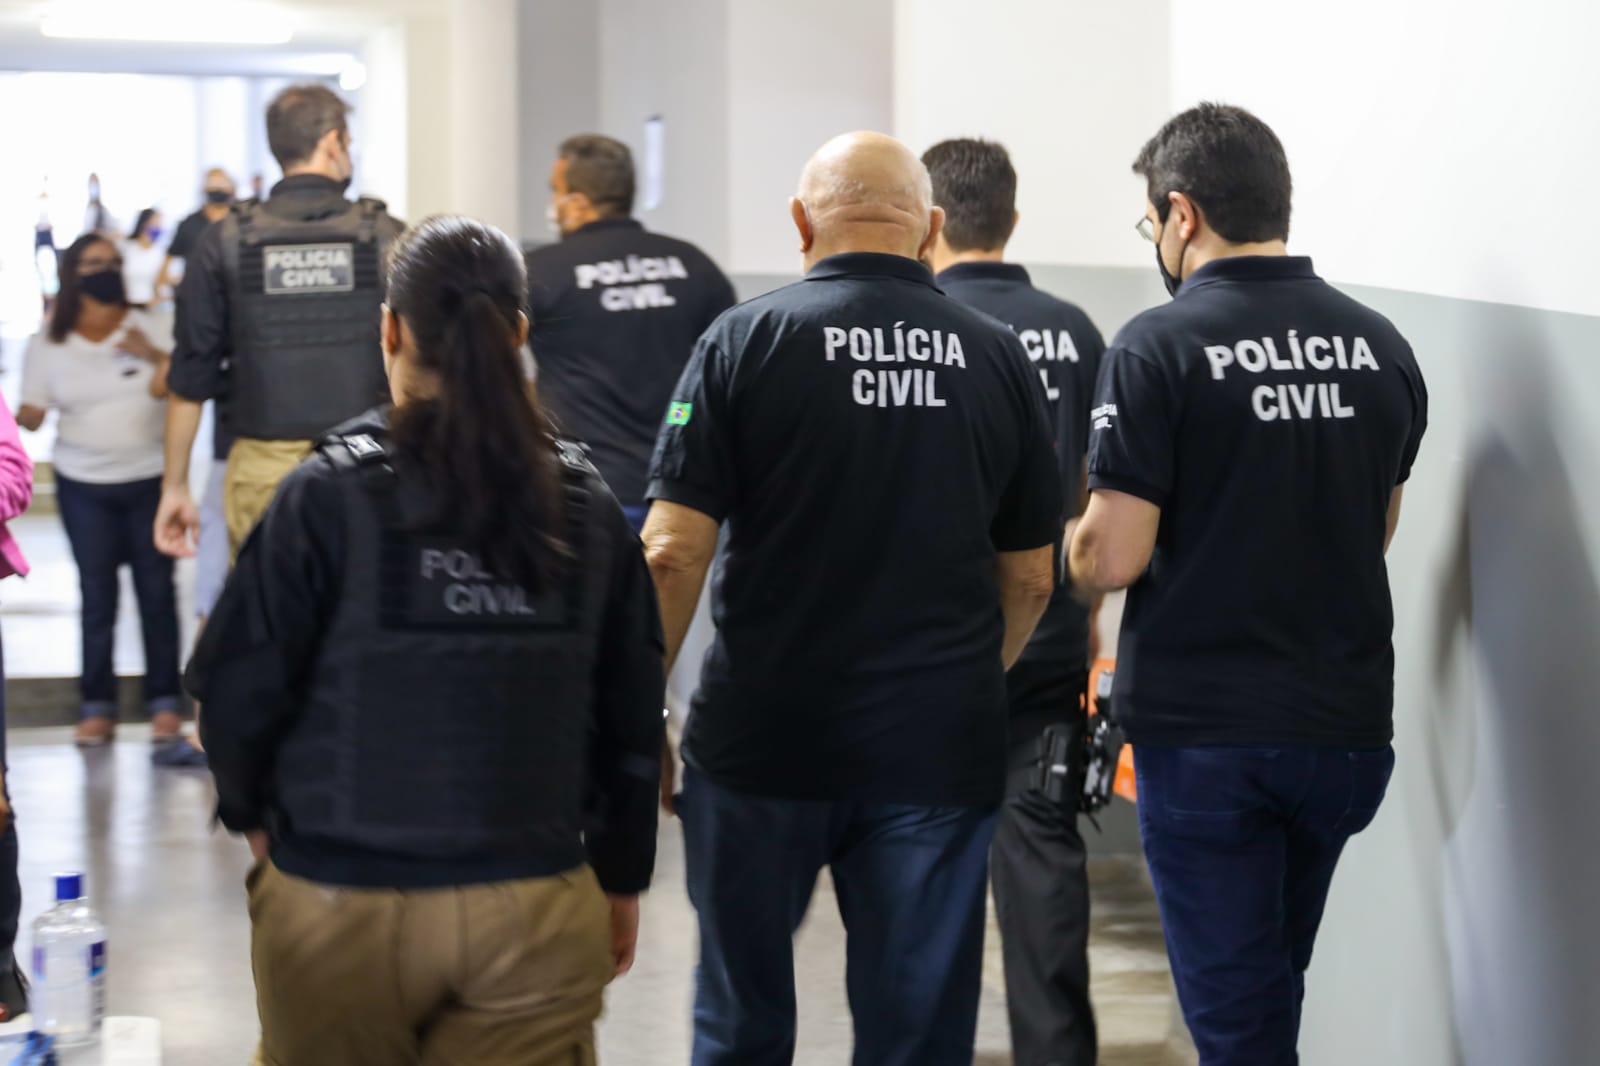 Raio-x das forças de segurança pública no Brasil